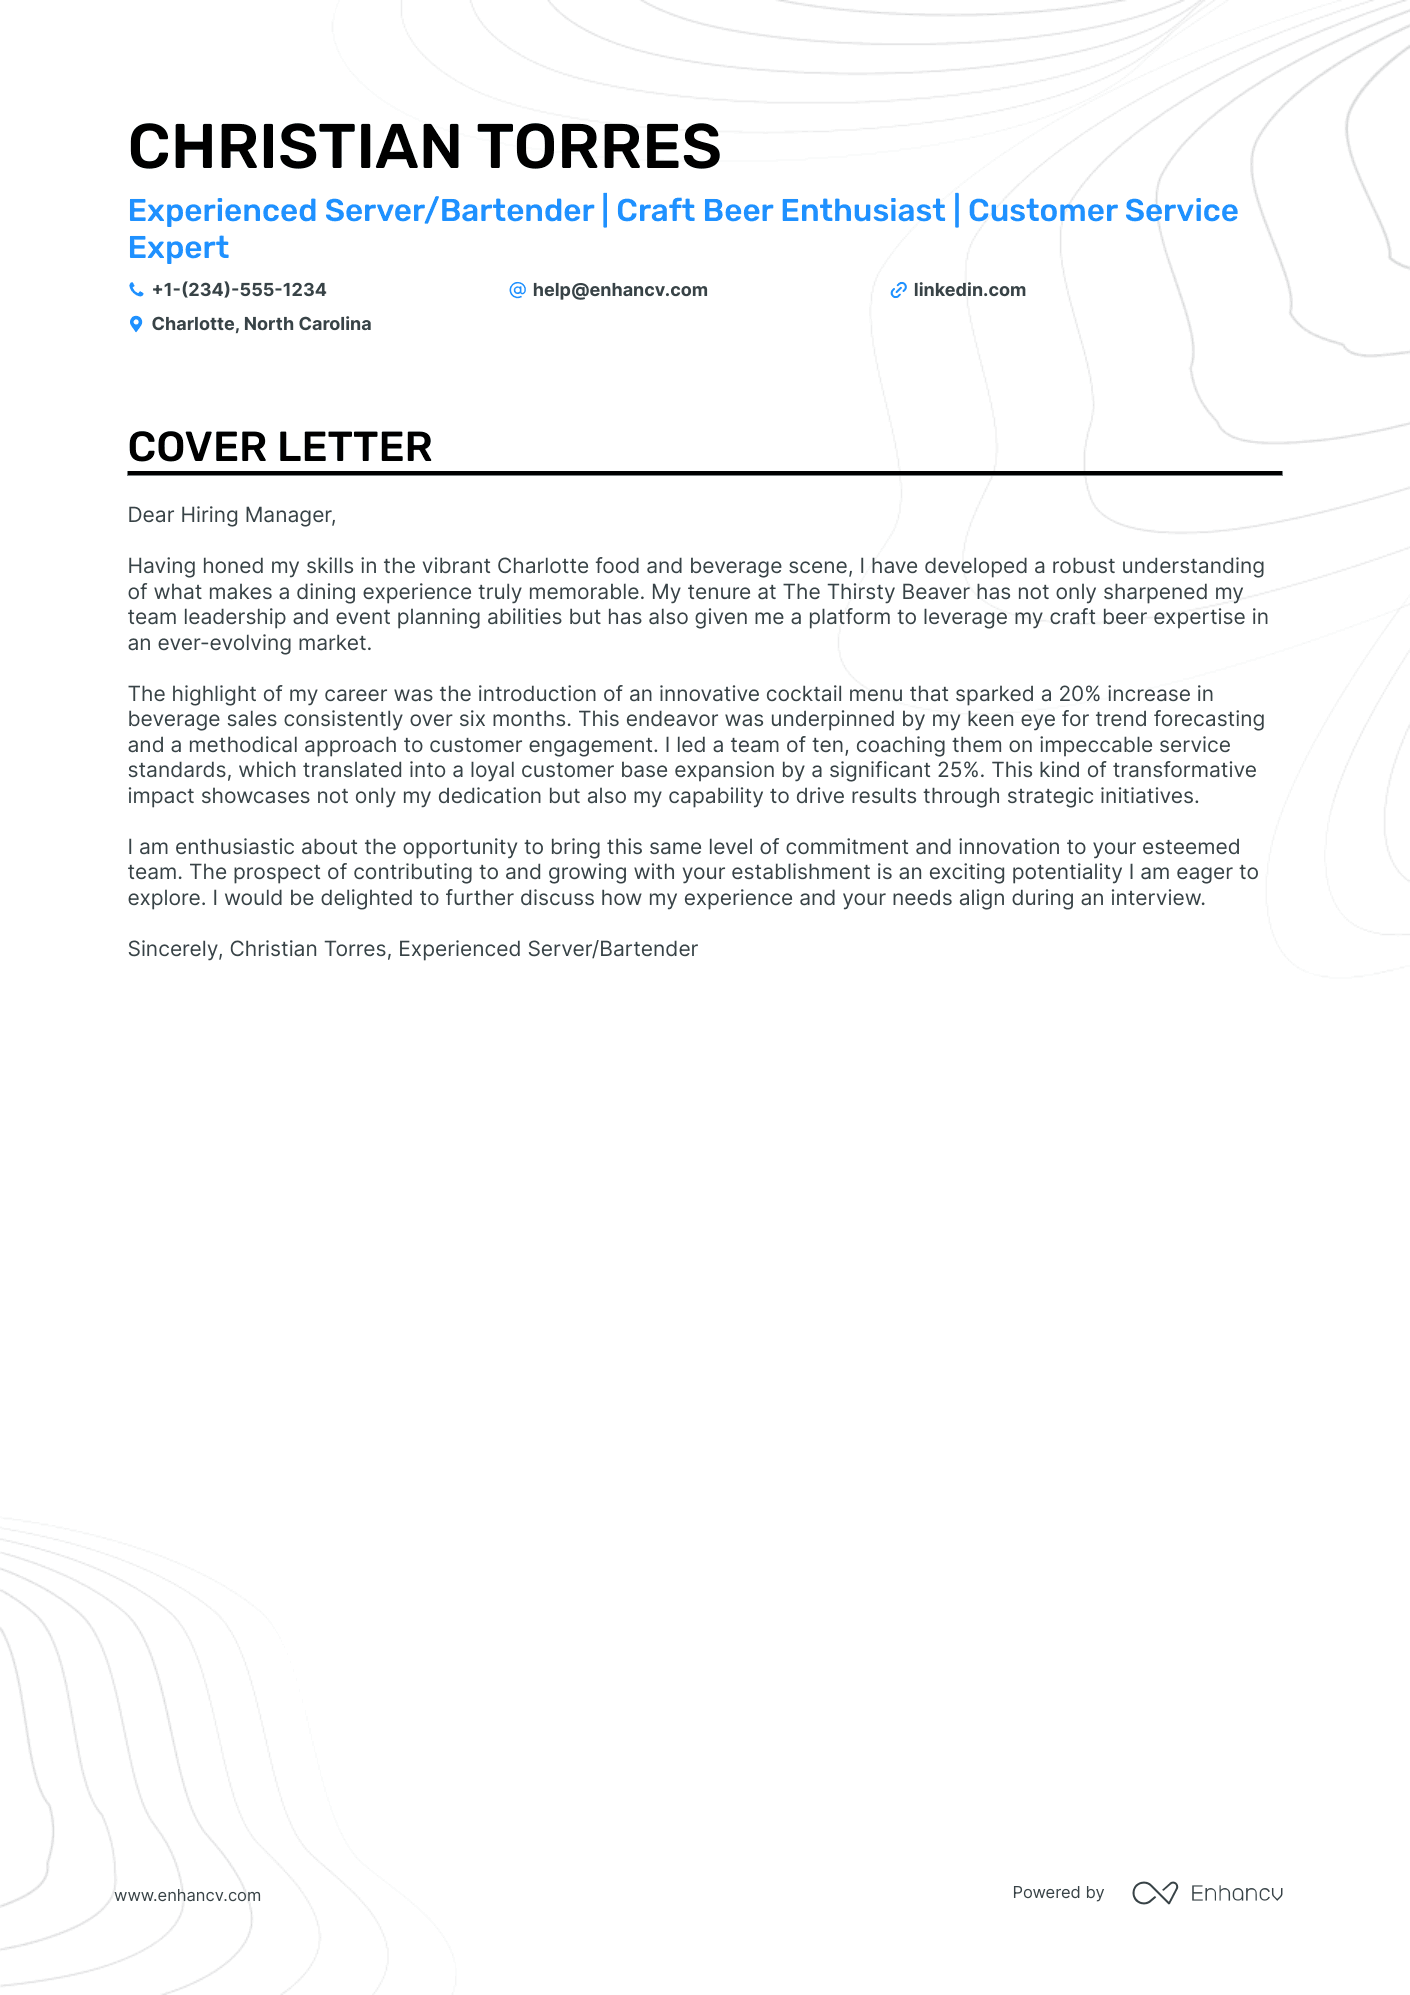 cover letter template for bartender